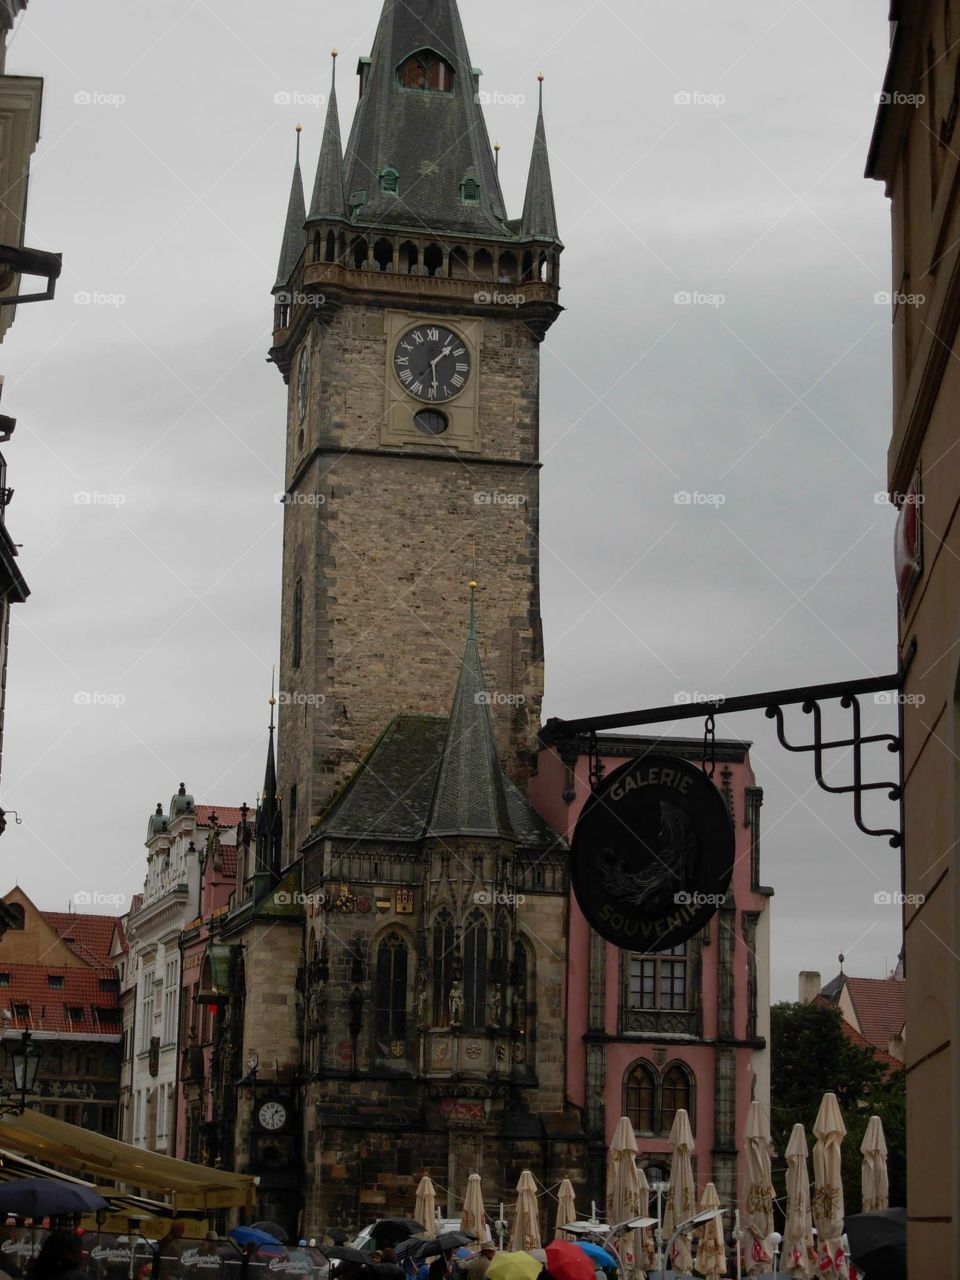 City center, Prague